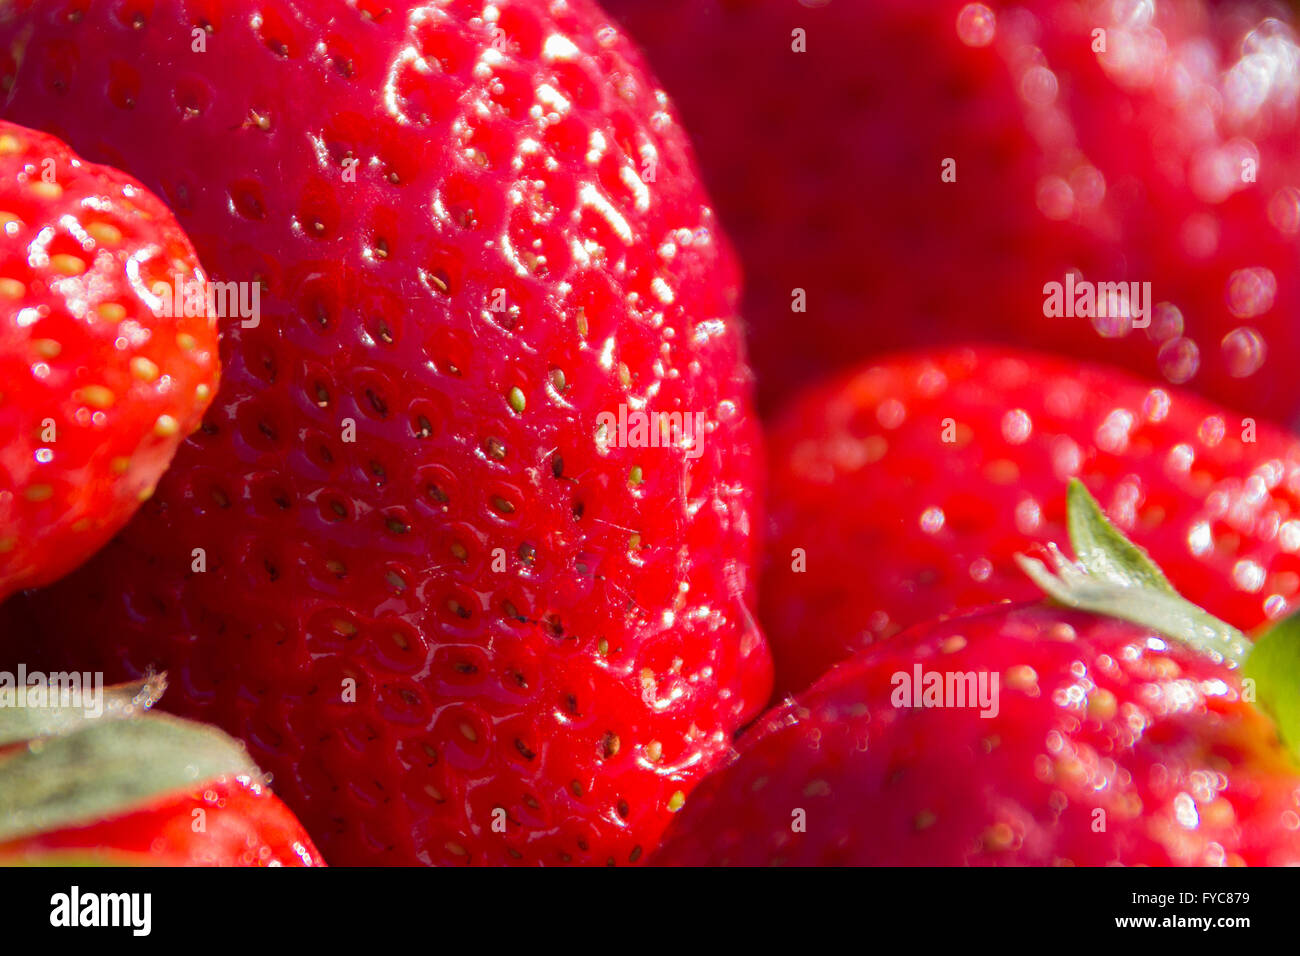 Erdbeer-Makro, Erdbeeren Closeup - Obst-Makro Stockfoto